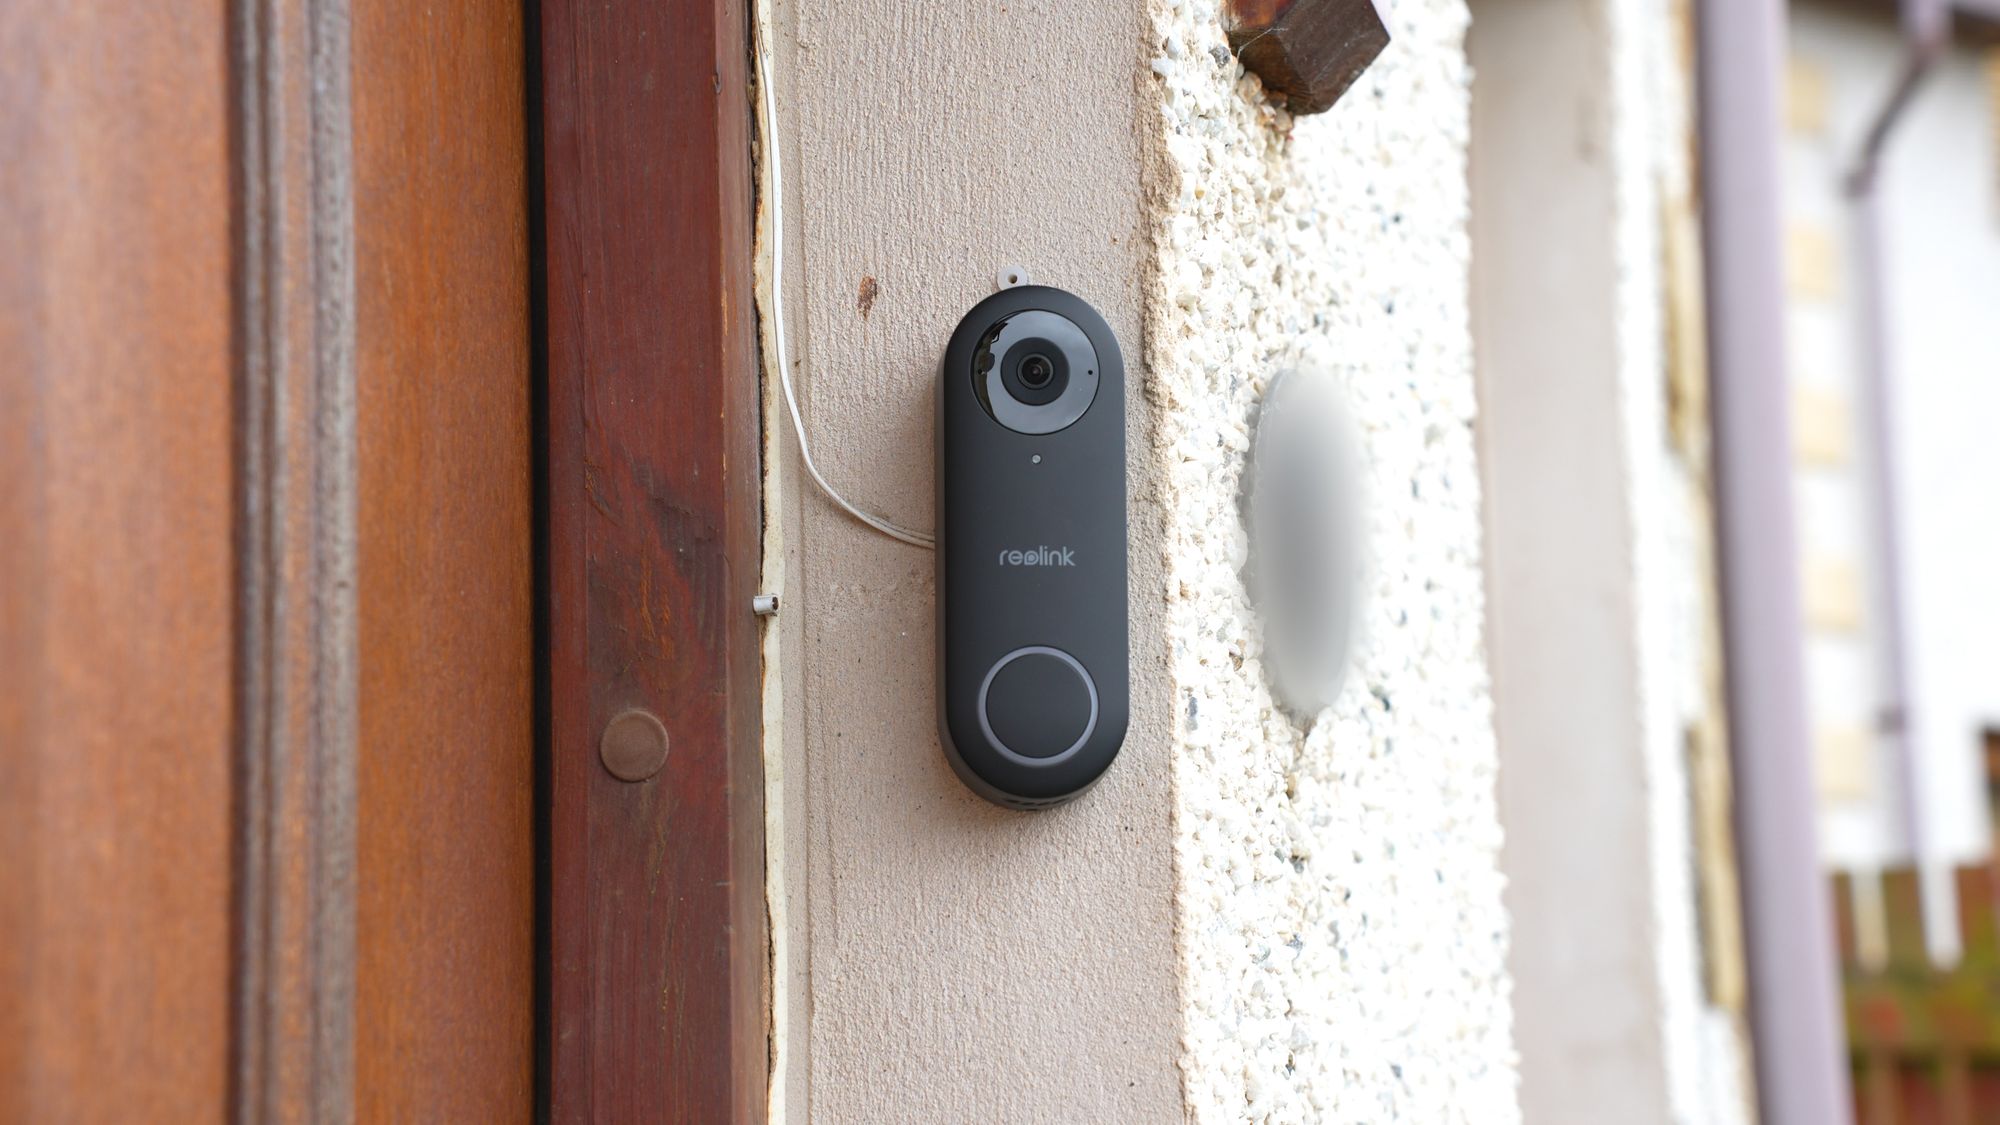 The King Of Video Doorbells - Reolink Video Doorbell Review